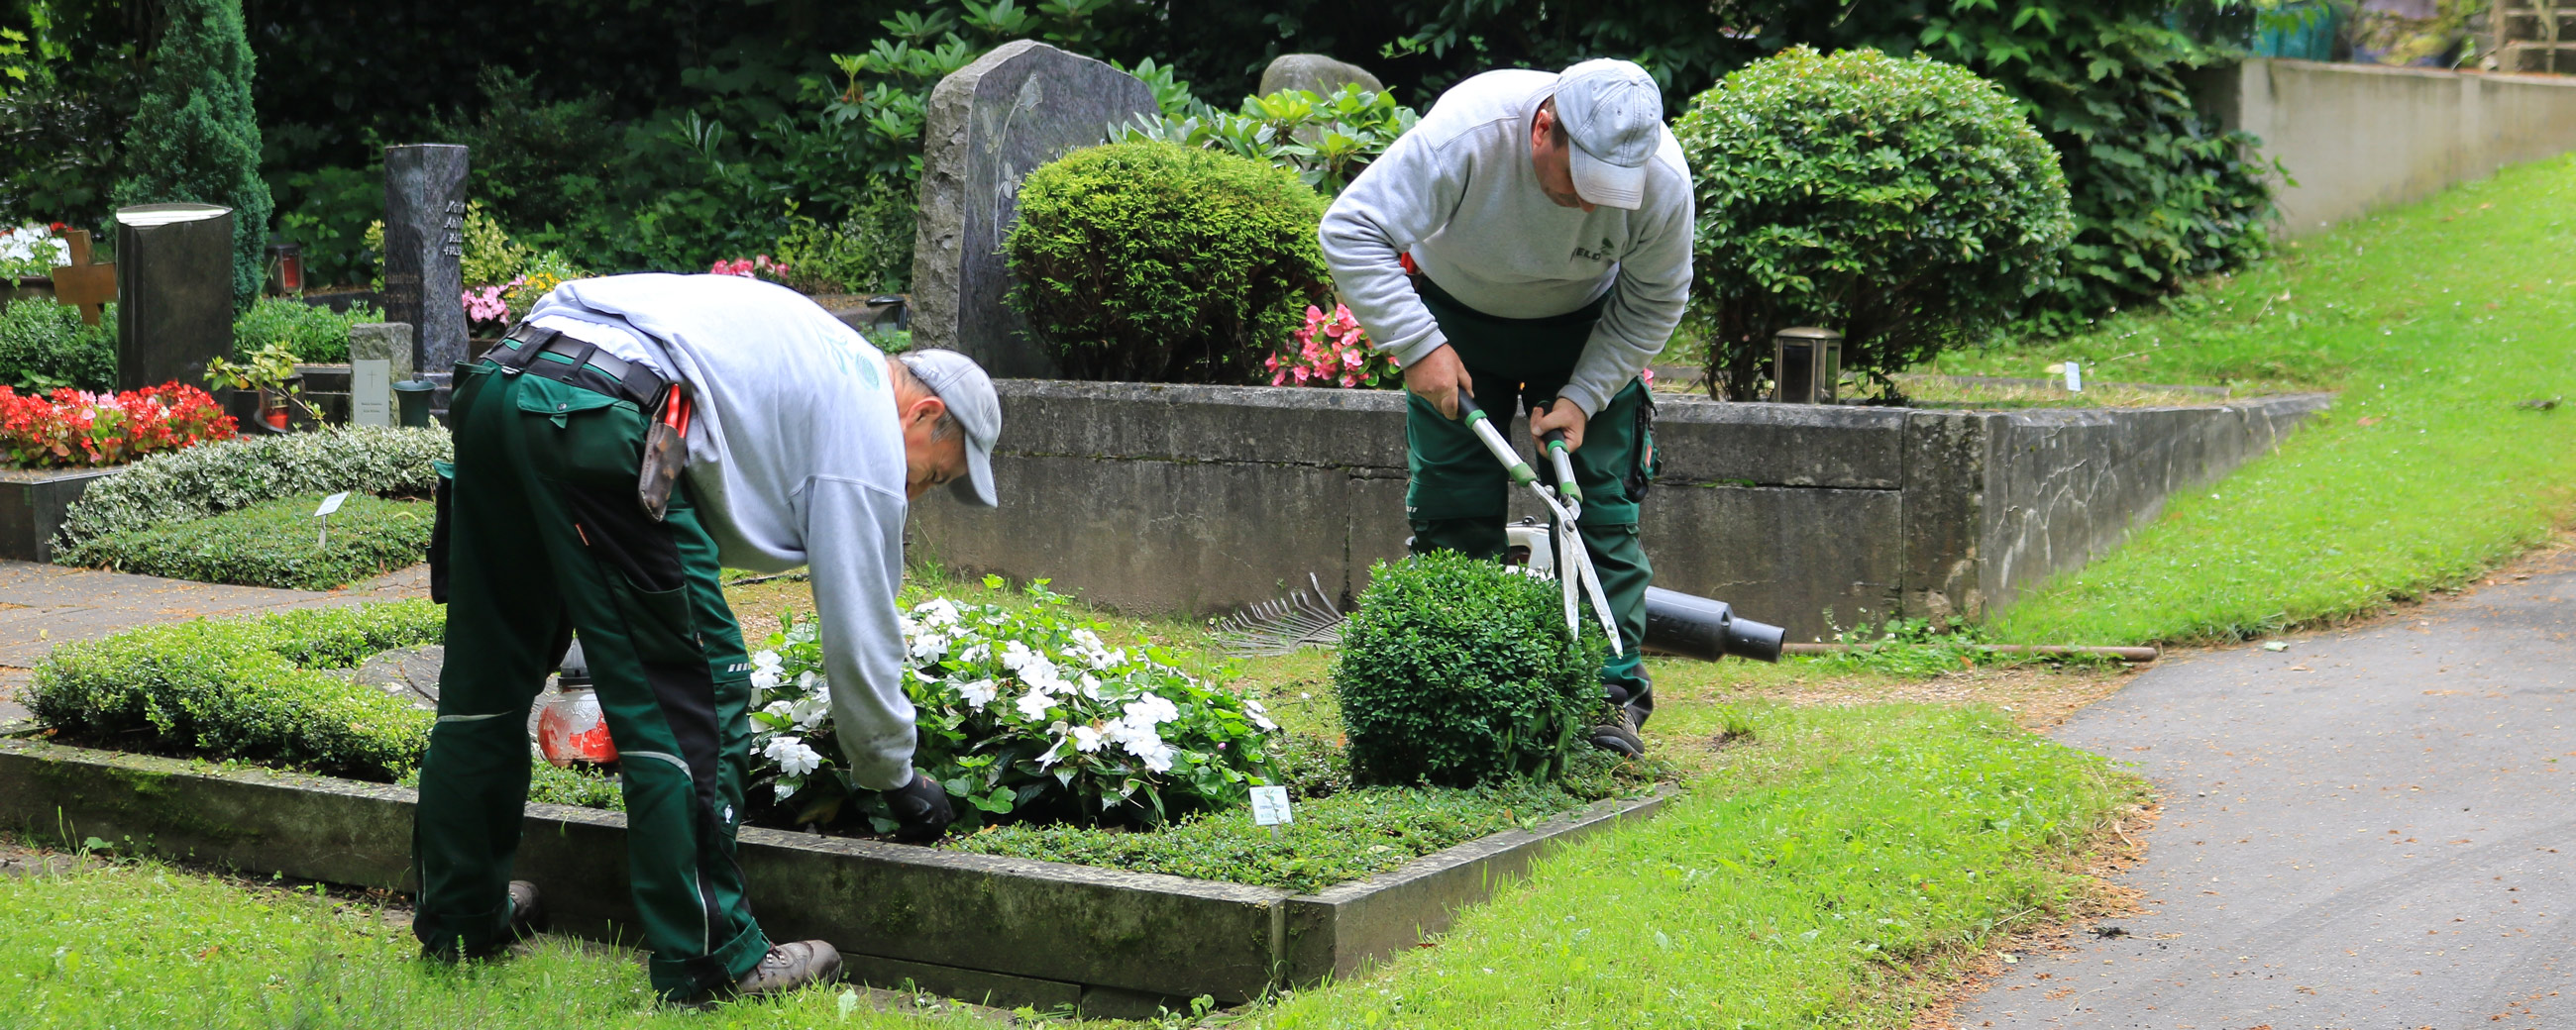 Gärtner säubern und beschneiden eine Grabbepflanzung